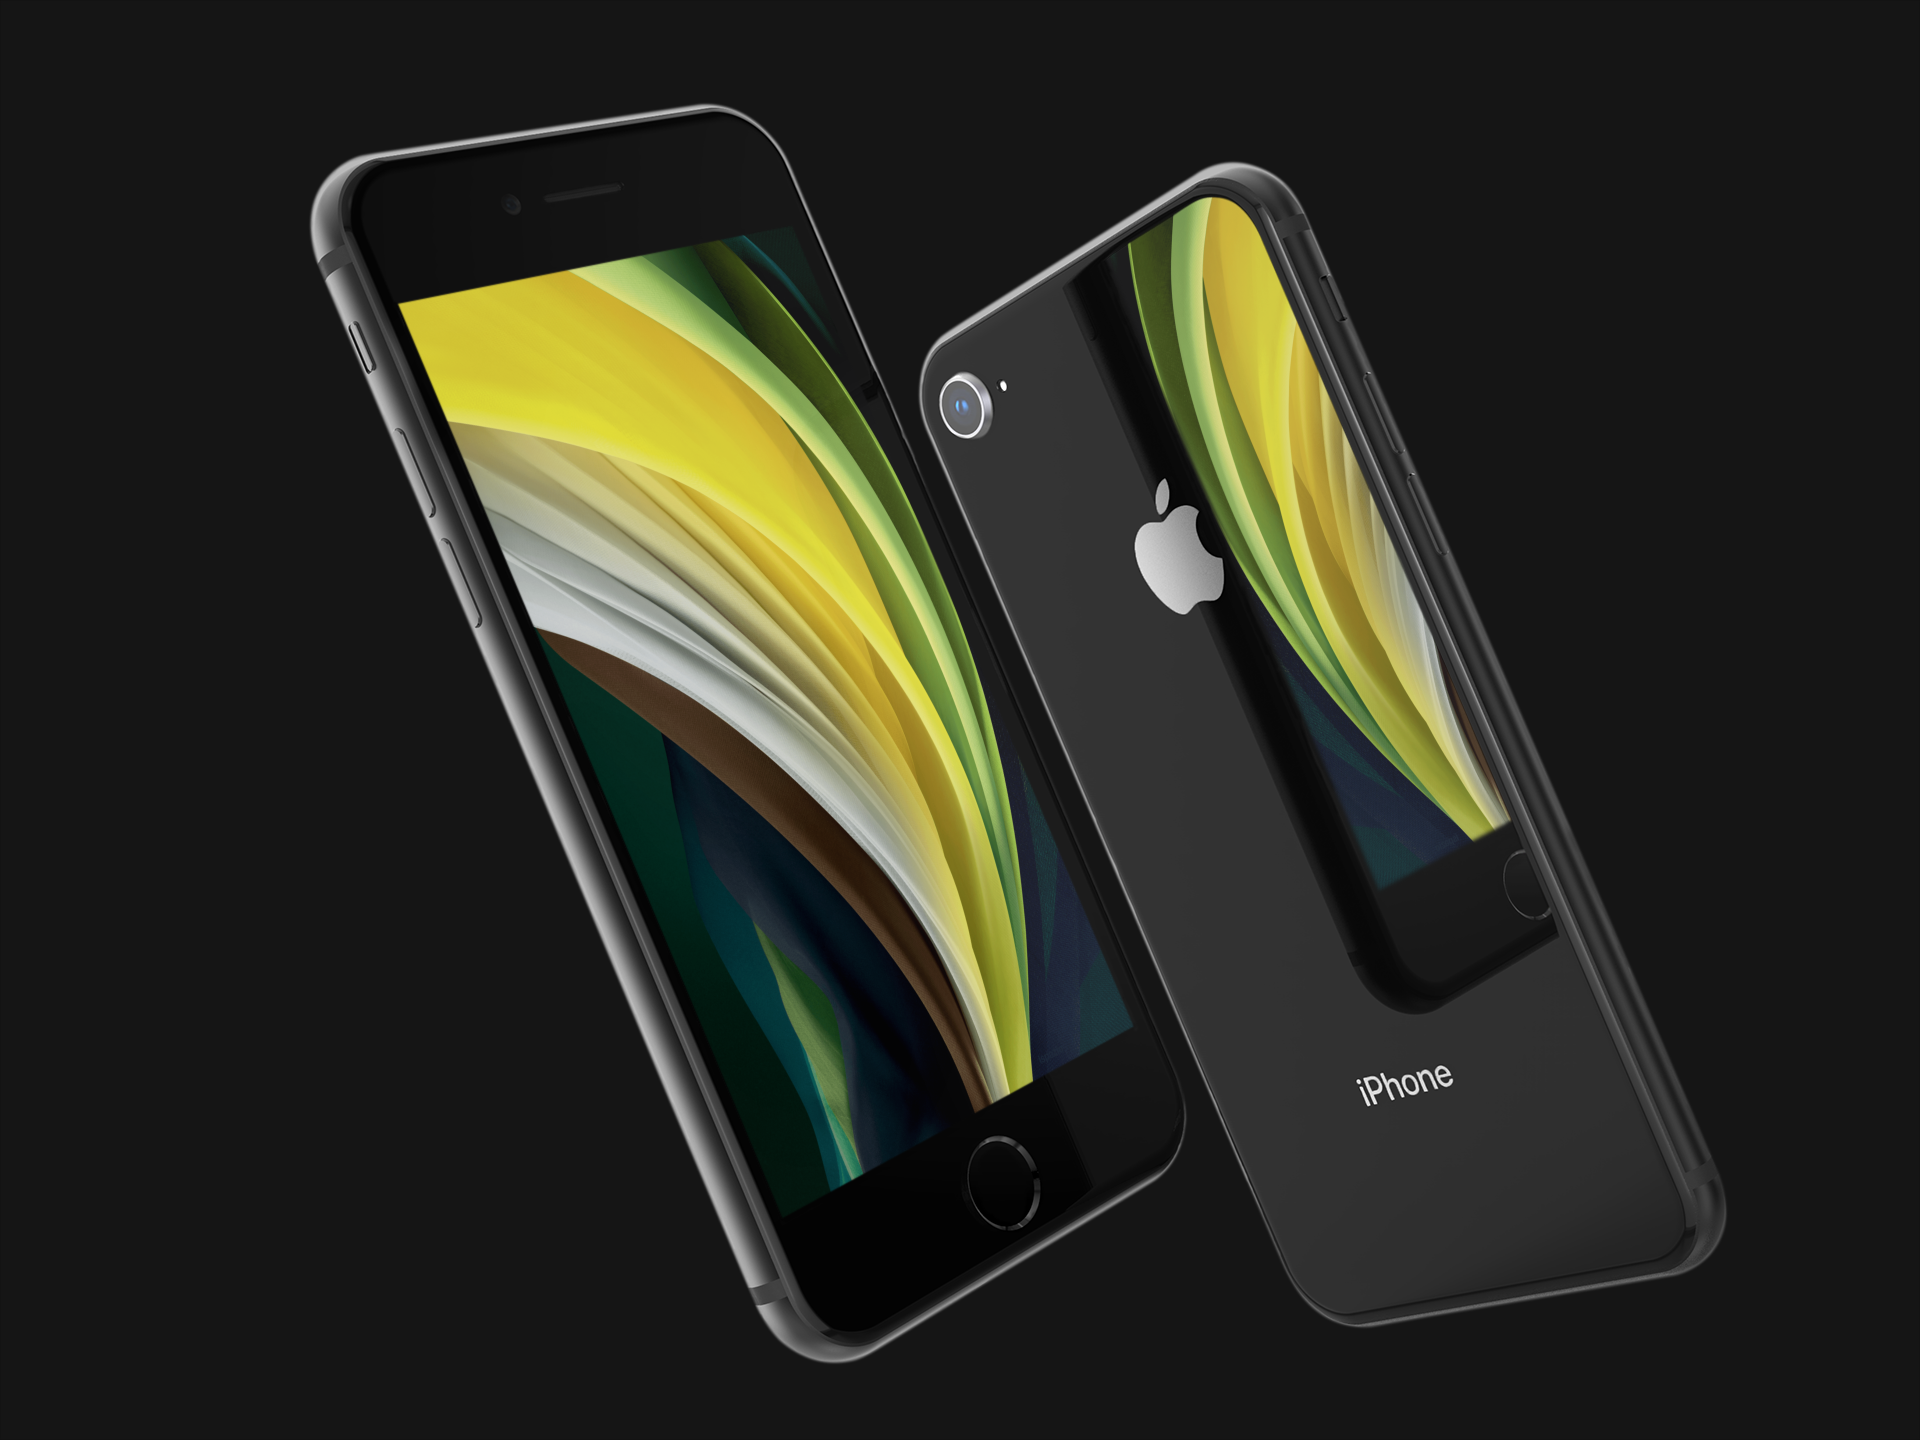 Giá iPhone SE 2020 chỉ bằng nửa iPhone 11, chất lượng khi đặt lên bàn cân thì sao?